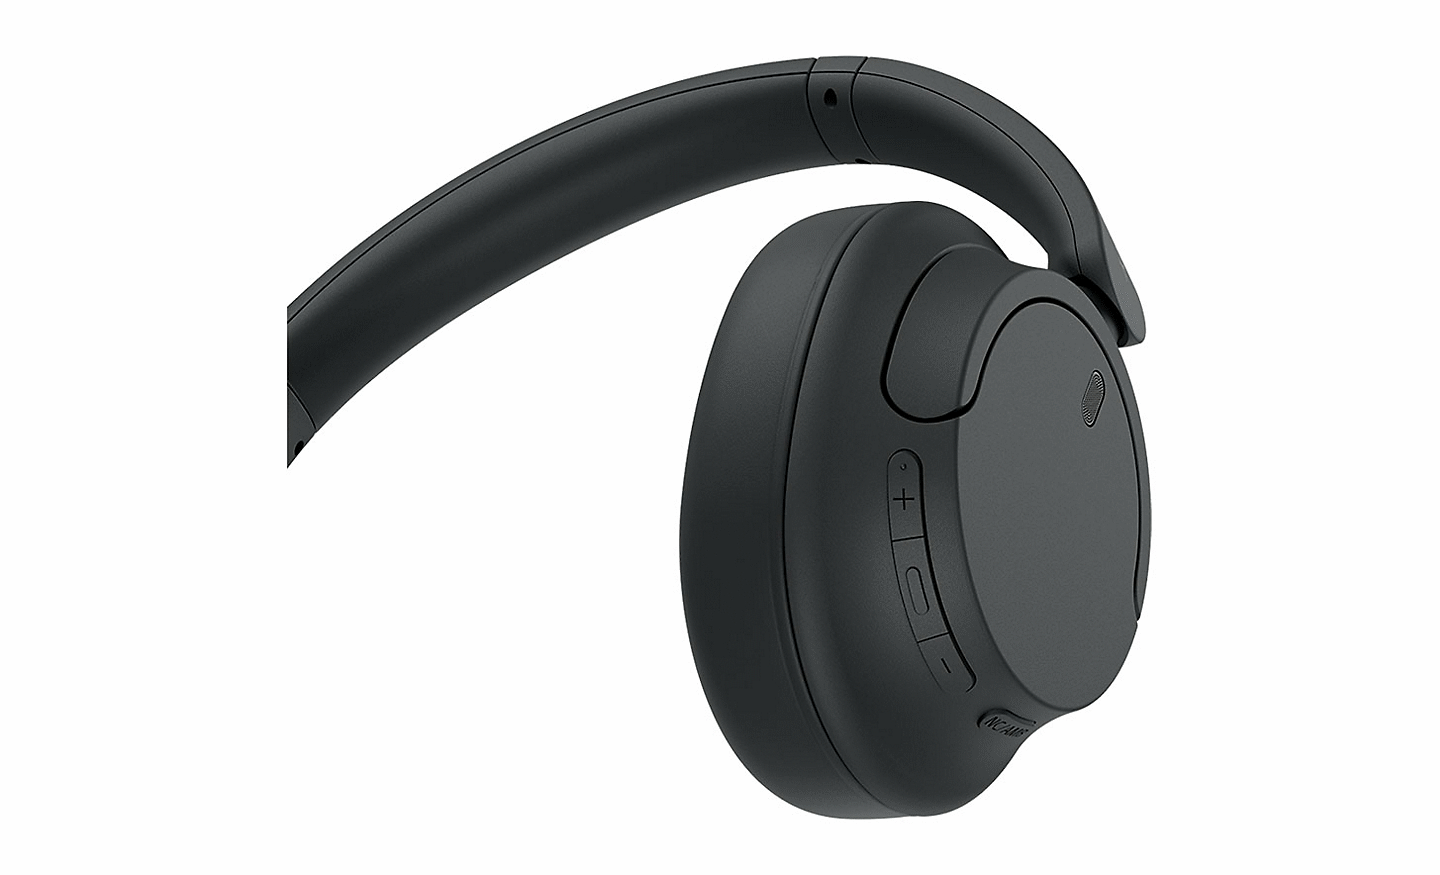 ภาพระยะใกล้ของปุ่มต่างๆ บนหูฟัง Sony WH-CH720 สีดำ